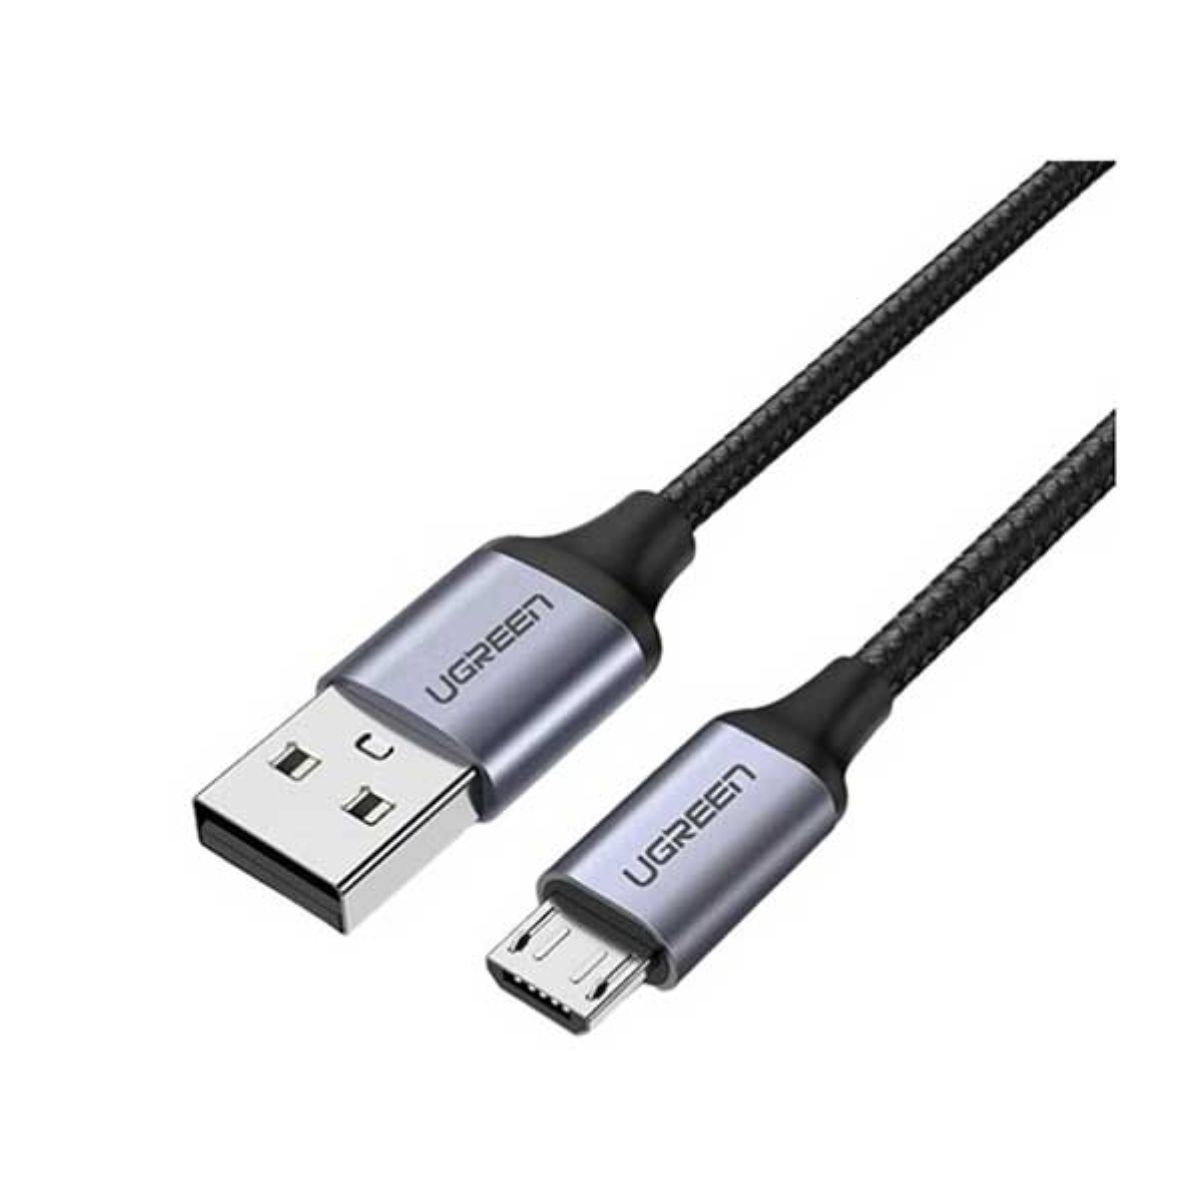 Cáp sạc nhanh 1.5m USB 2.0 Ugreen 60147 US290 mạ niken Bện nhôm, màu đen